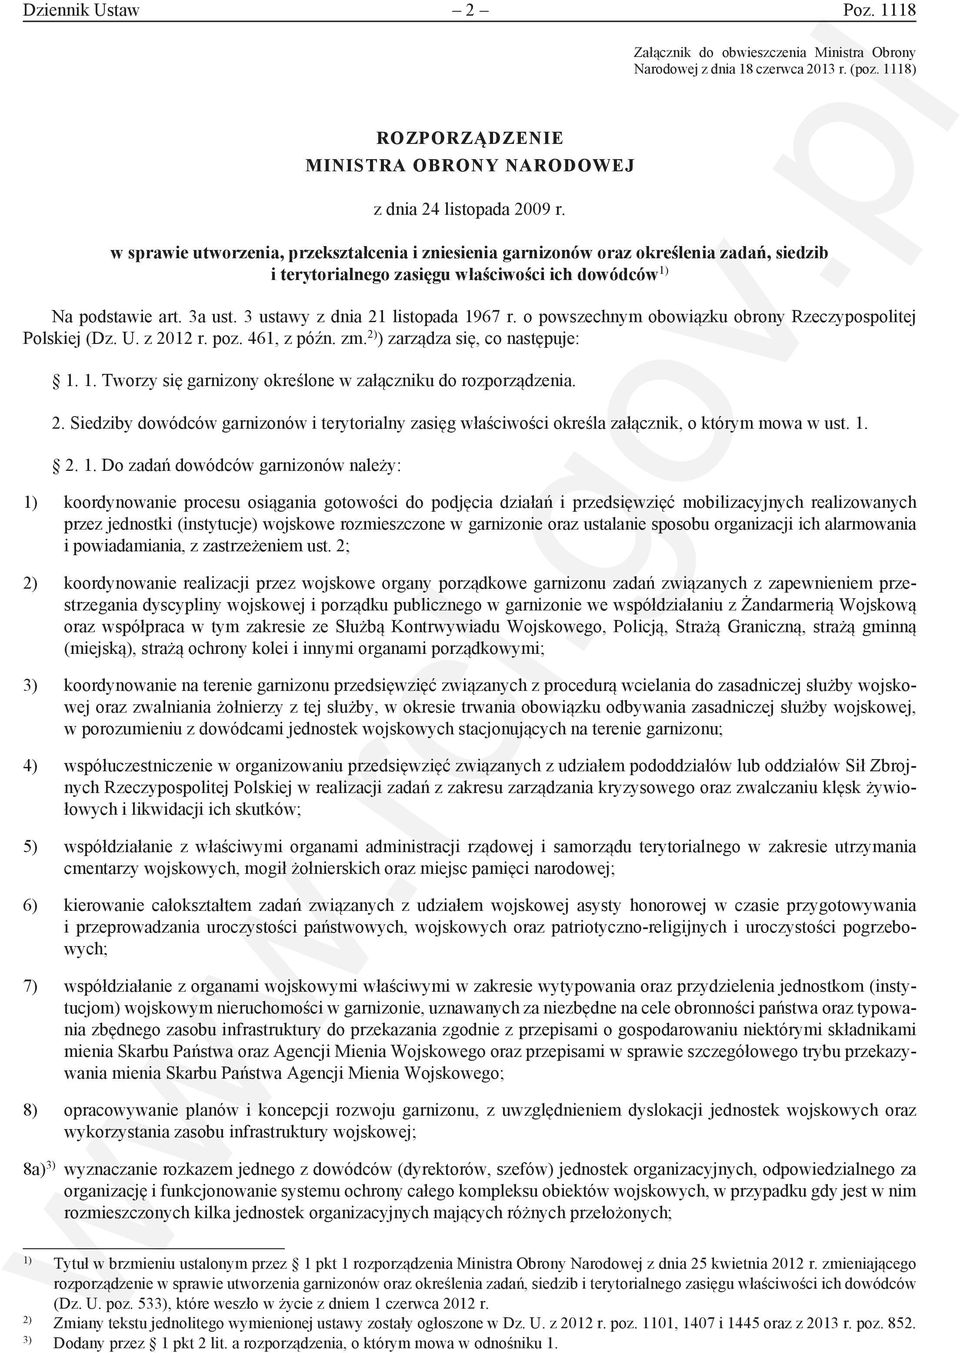 3 ustawy z dnia 21 listopada 1967 r. o powszechnym obowiązku obrony Rzeczypospolitej Polskiej (Dz. U. z 2012 r. poz. 461, z późn. zm. 2) ) zarządza się, co następuje: 1. 1. Tworzy się garnizony określone w załączniku do rozporządzenia.